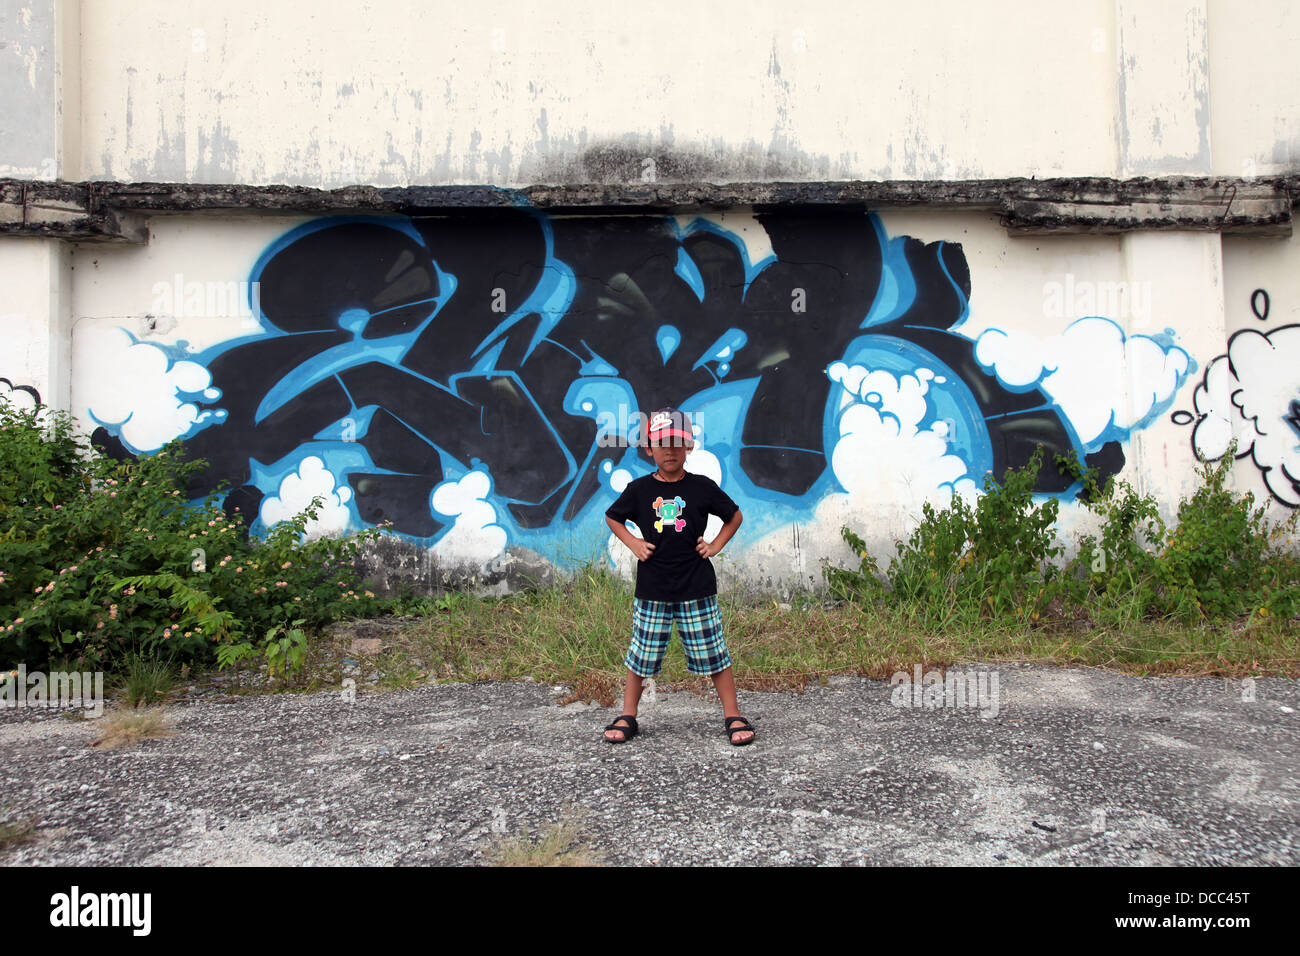 C'est une photo d'un graffiti tag bleu sur un mur sur un no man's land area en Malaisie. Nous voyons l'herbe et détruit un mur poussiéreux sale Banque D'Images